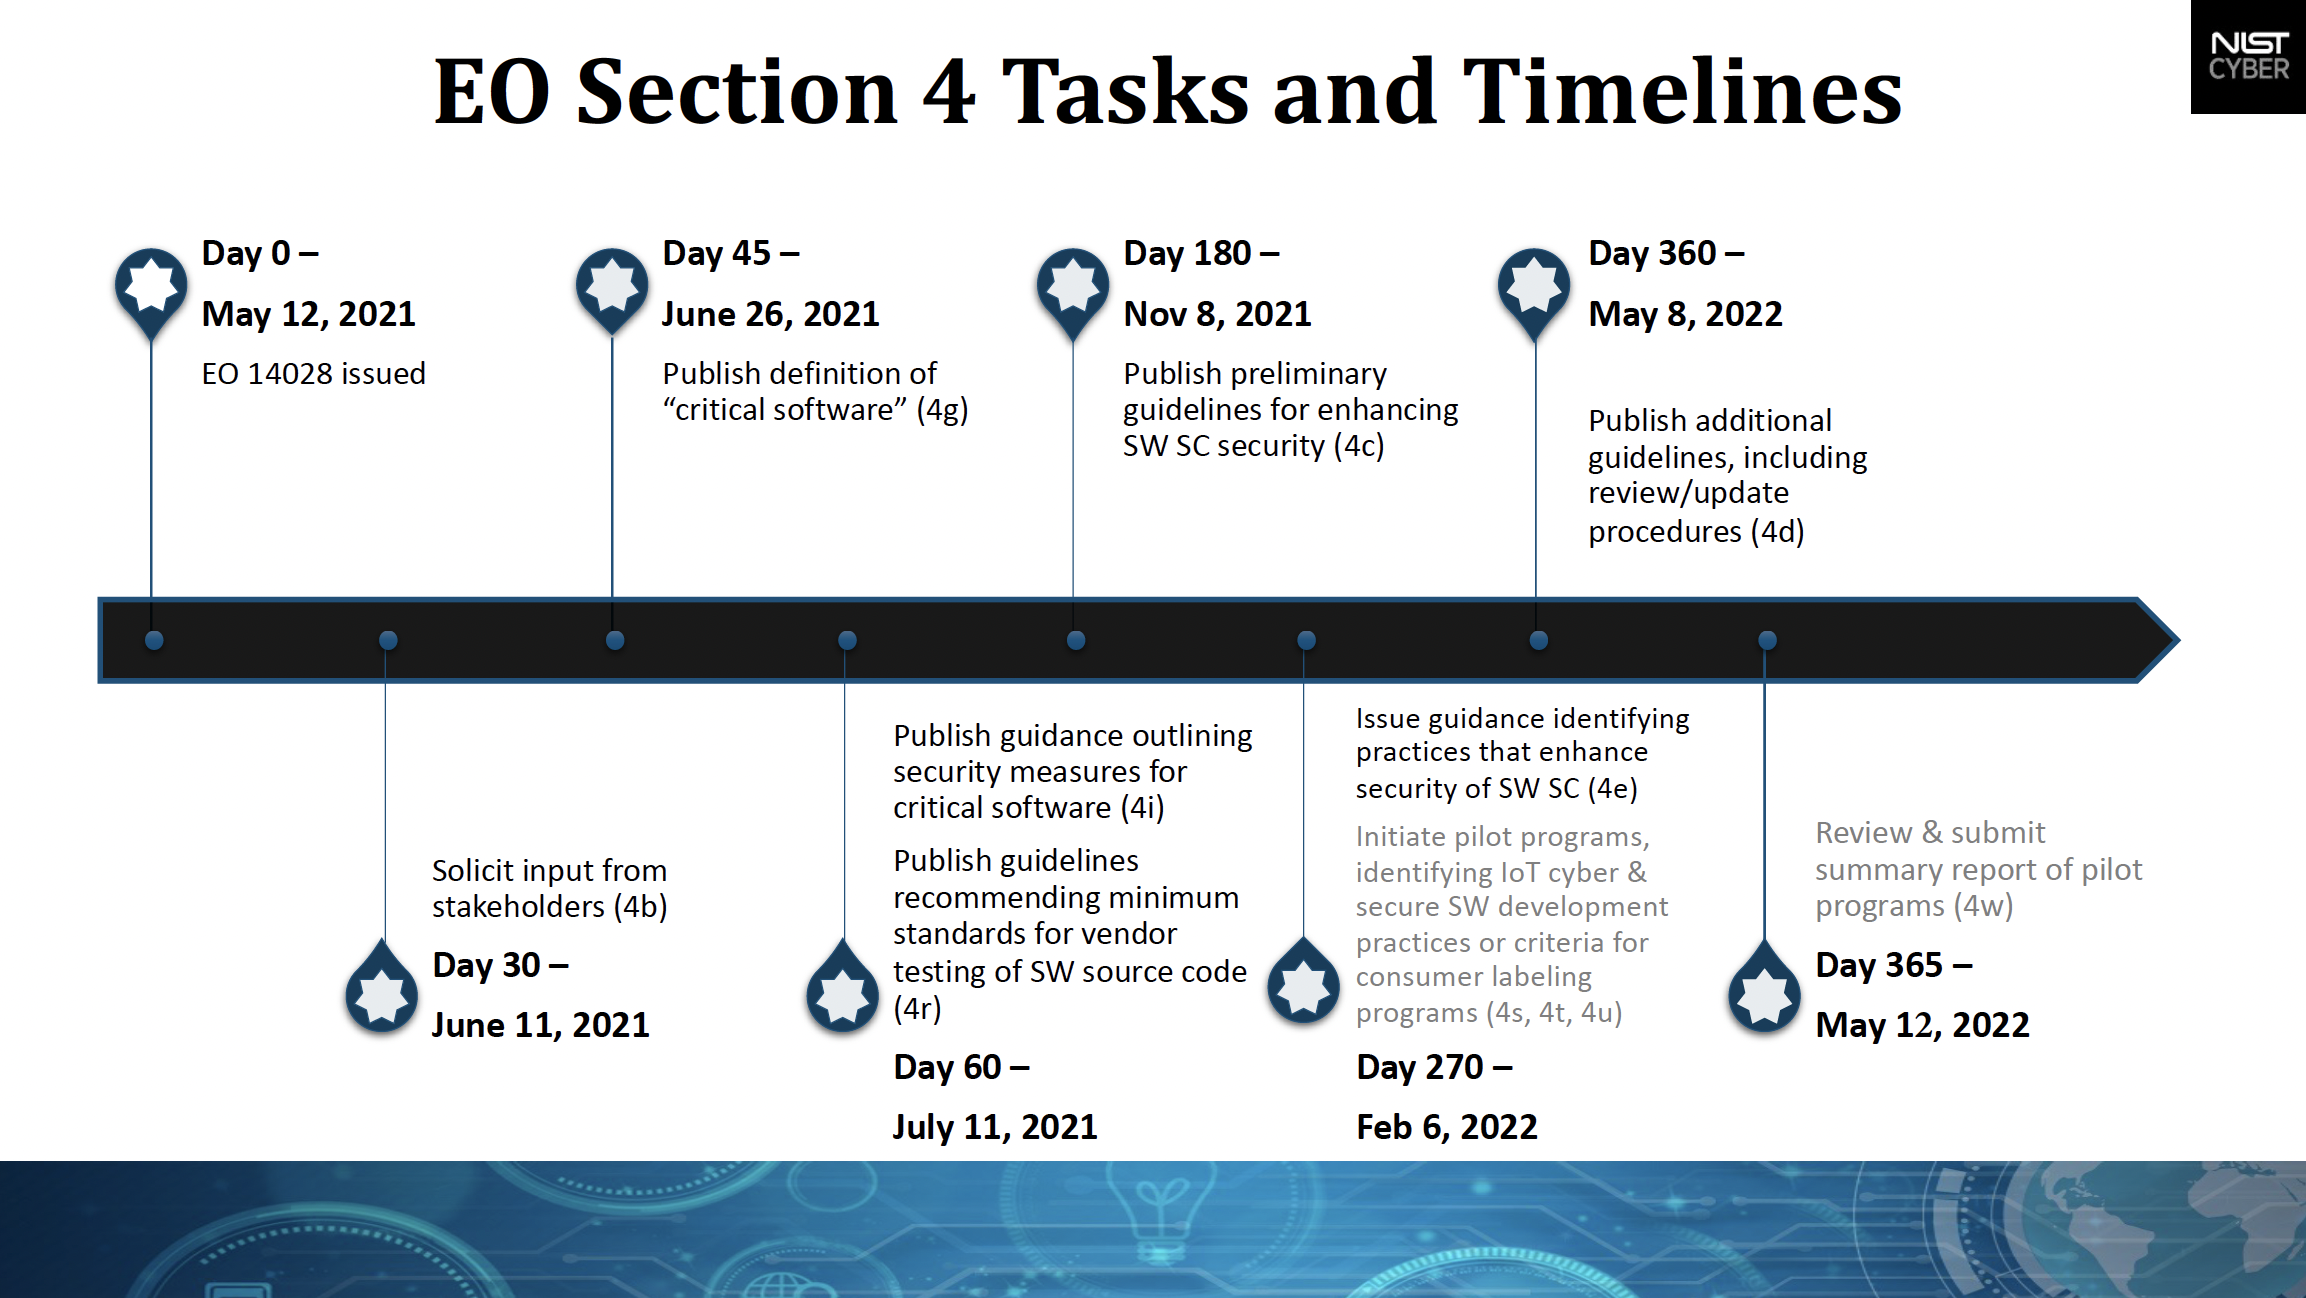 NIST Tasks and Timeline for EO 14028 Section 4